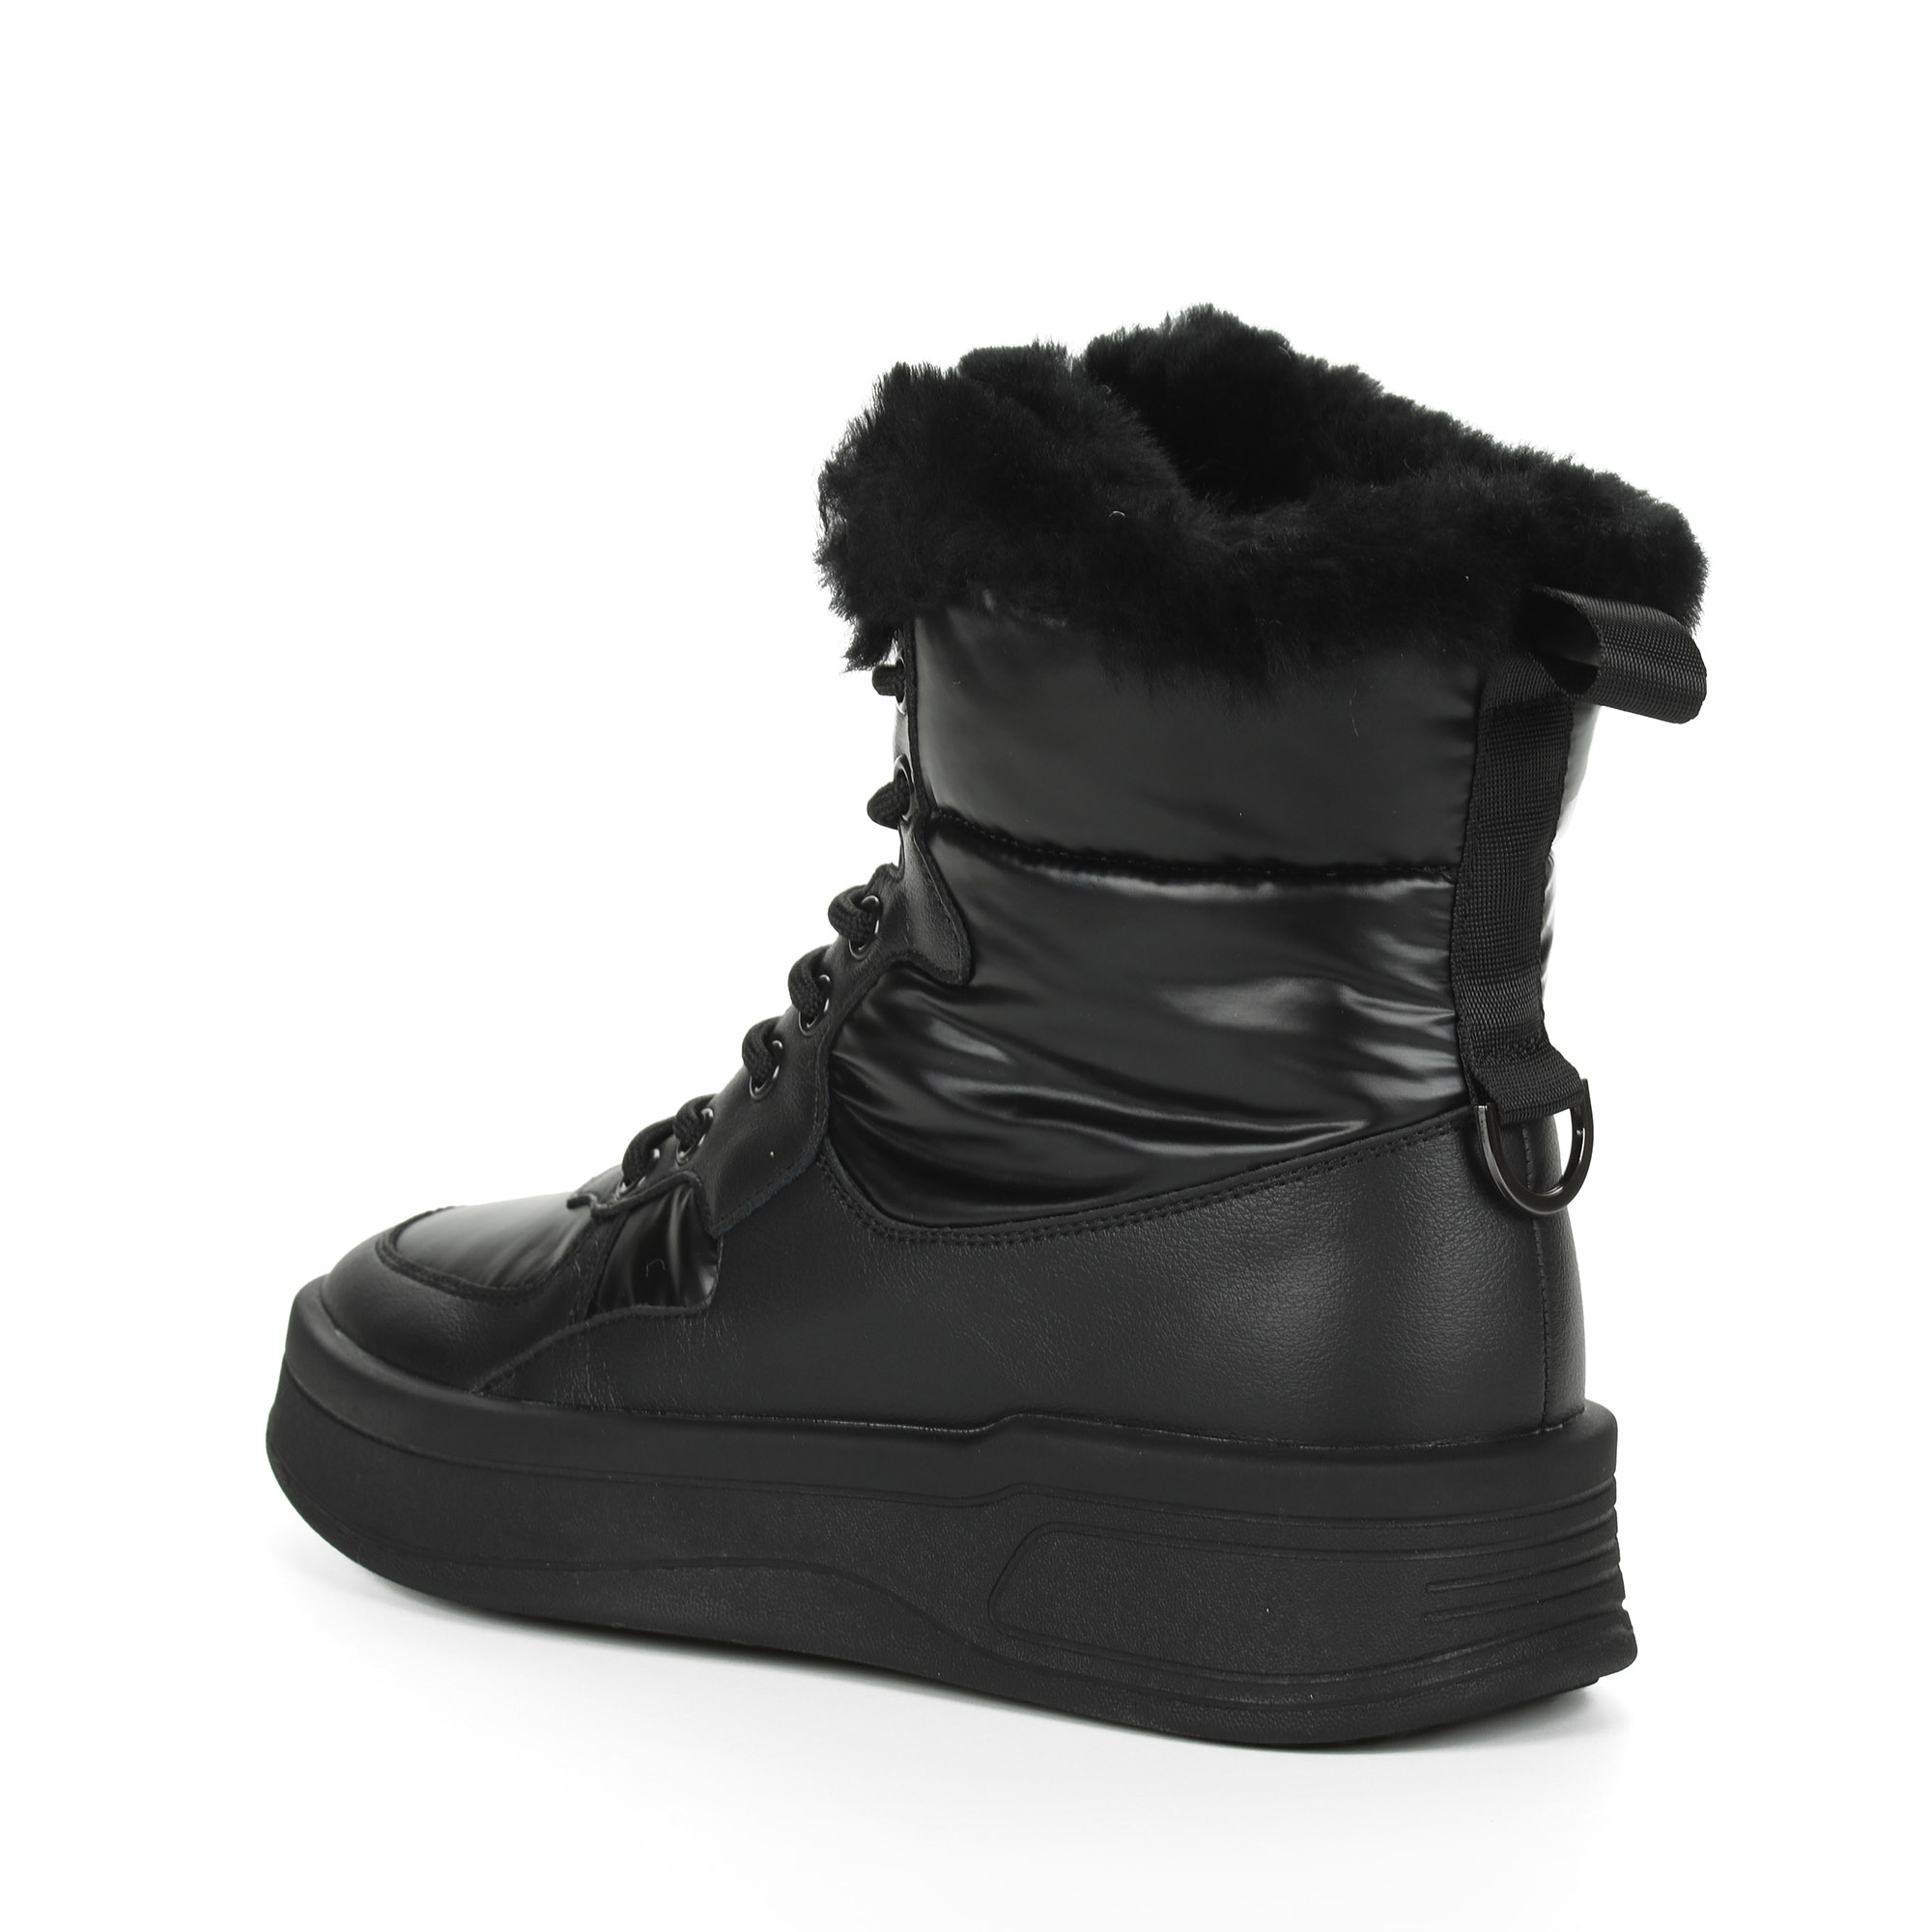 Черные высокие кроссовки из комбинированных материалов смеховой опушкой на подкладке из натуральной шерсти на утолщенной платформе Respect, цвет черный - фото 5